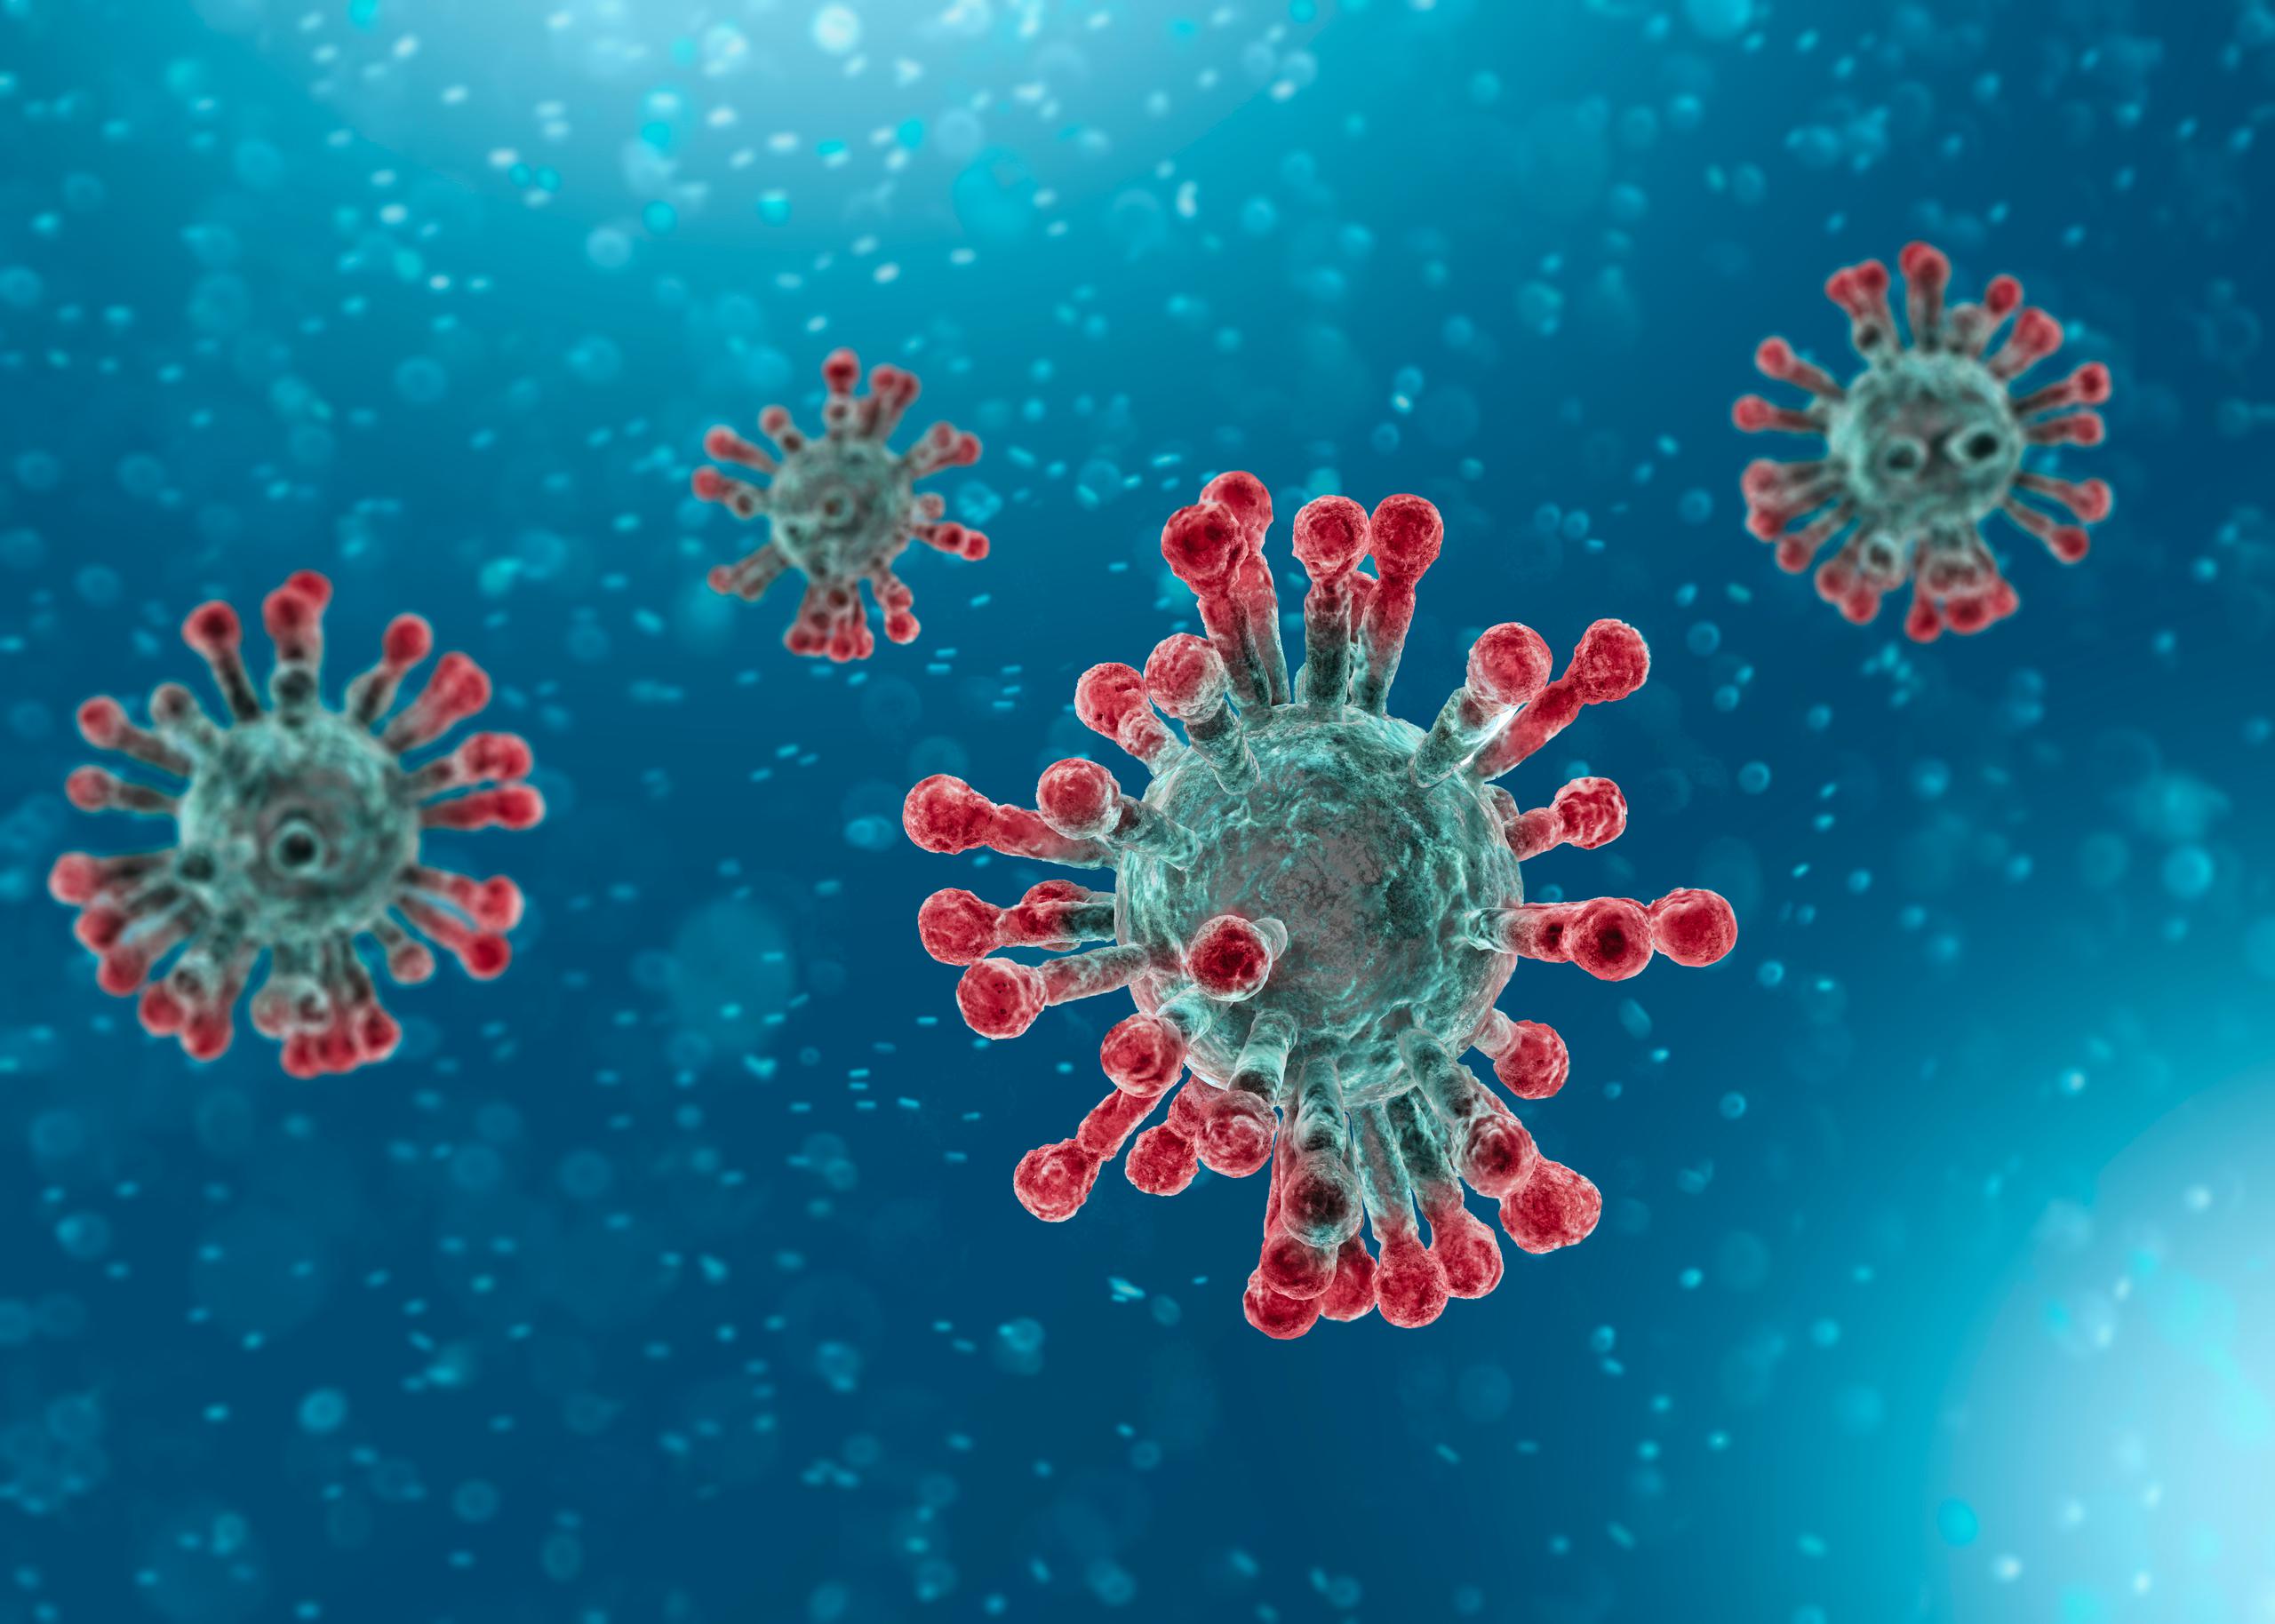 Imagen mejorada del coronavirus SARS-CoV-2 tomada por un microscopio electrónico.